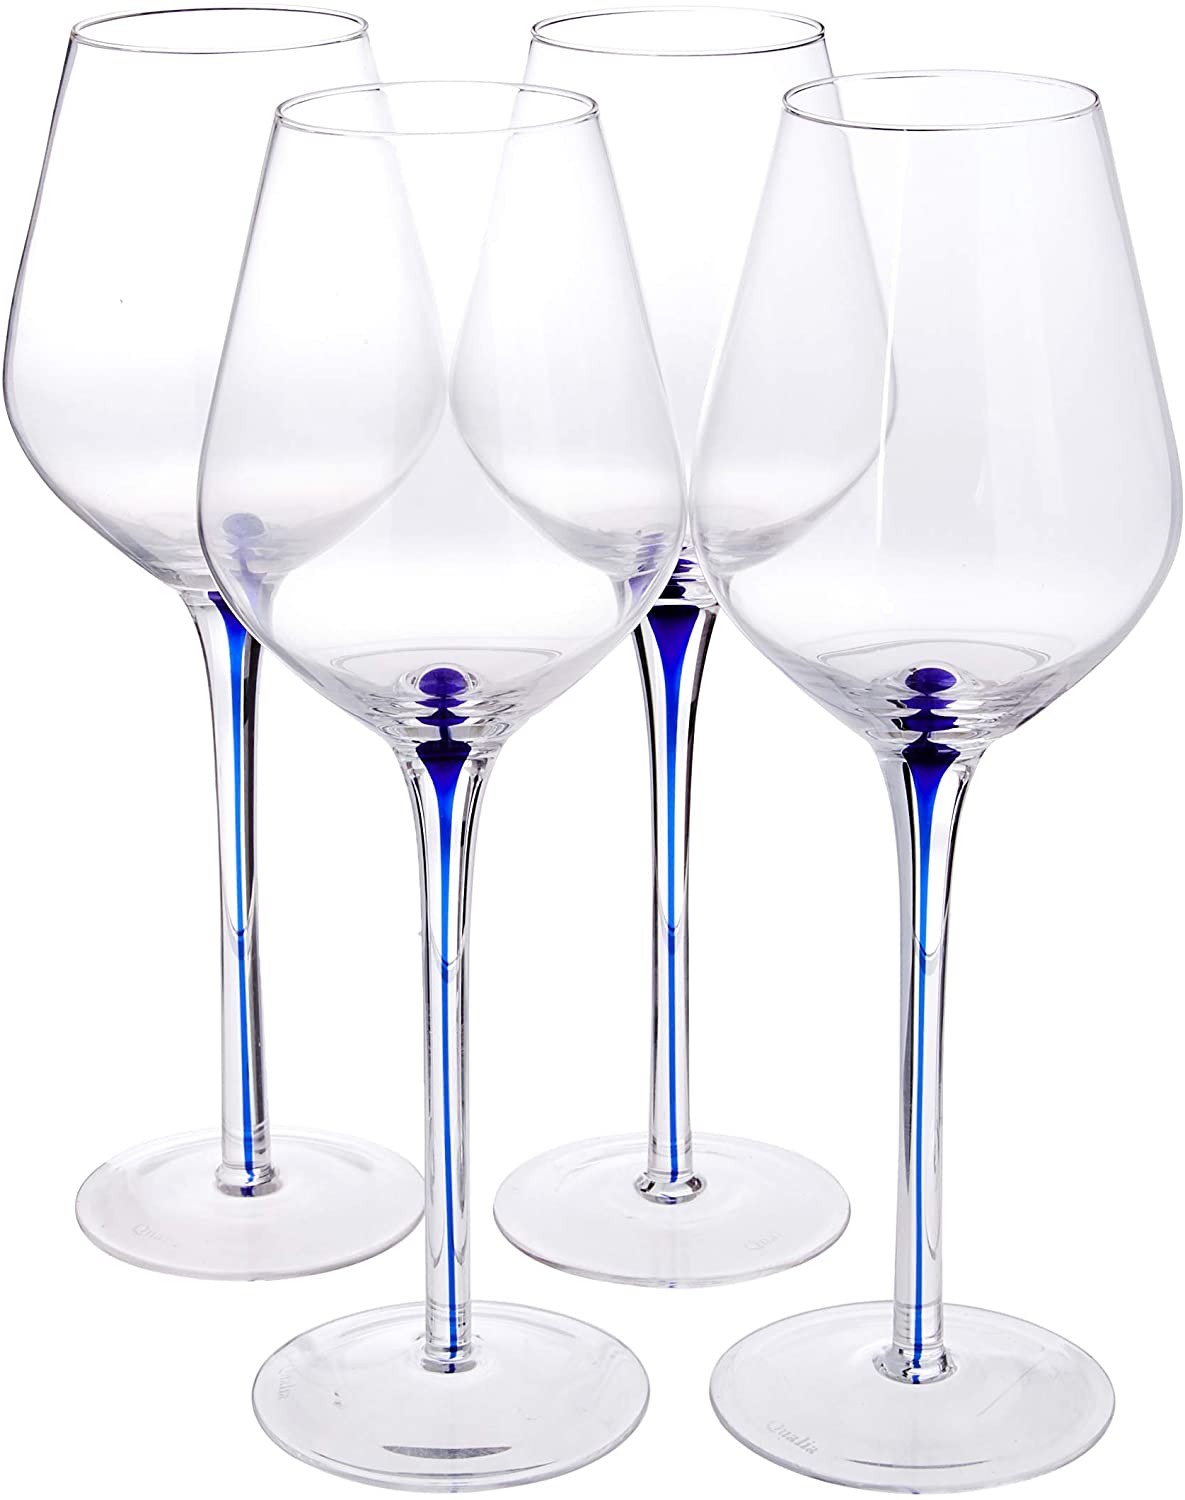 Qualia Tempest 16 Oz Wine Water Goblets  Glasses - Cobalt, Set of 4